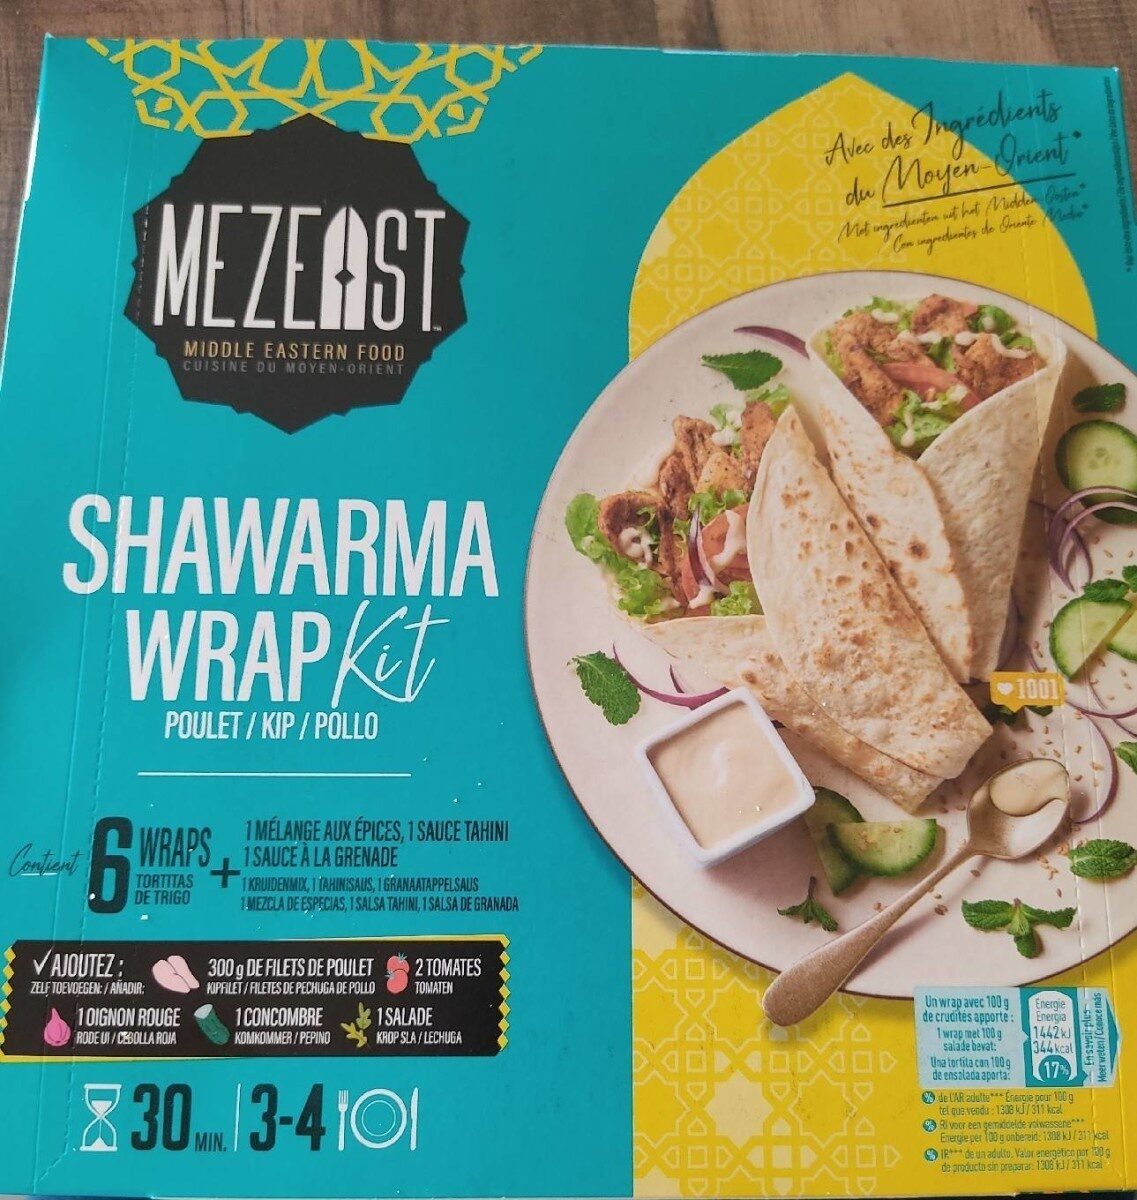 Shawarma wrap kit poulet - نتاج - fr